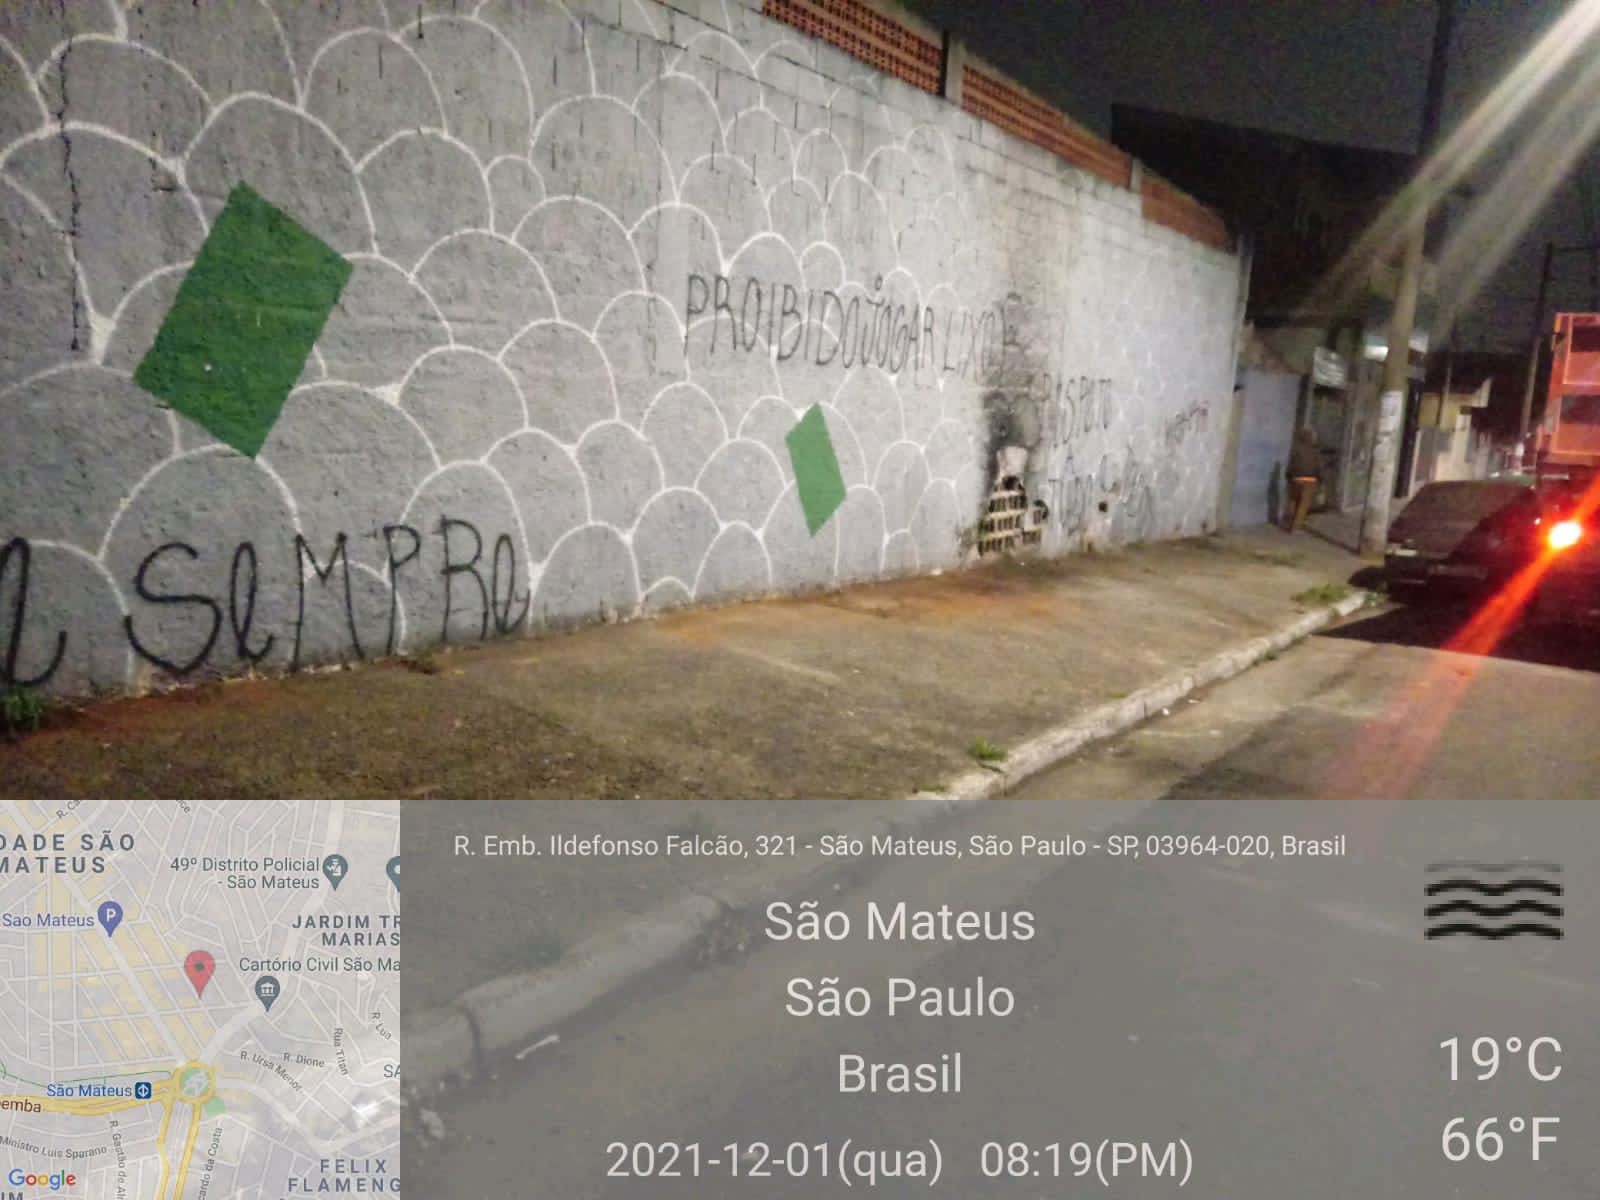 Em uma rua iluminada, um caminhão basculante está parado em frente a um muro pintado e com a calçada limpa. Foto identificada como rua Embaixador Ildefonso Falcão, 321, São Mateus